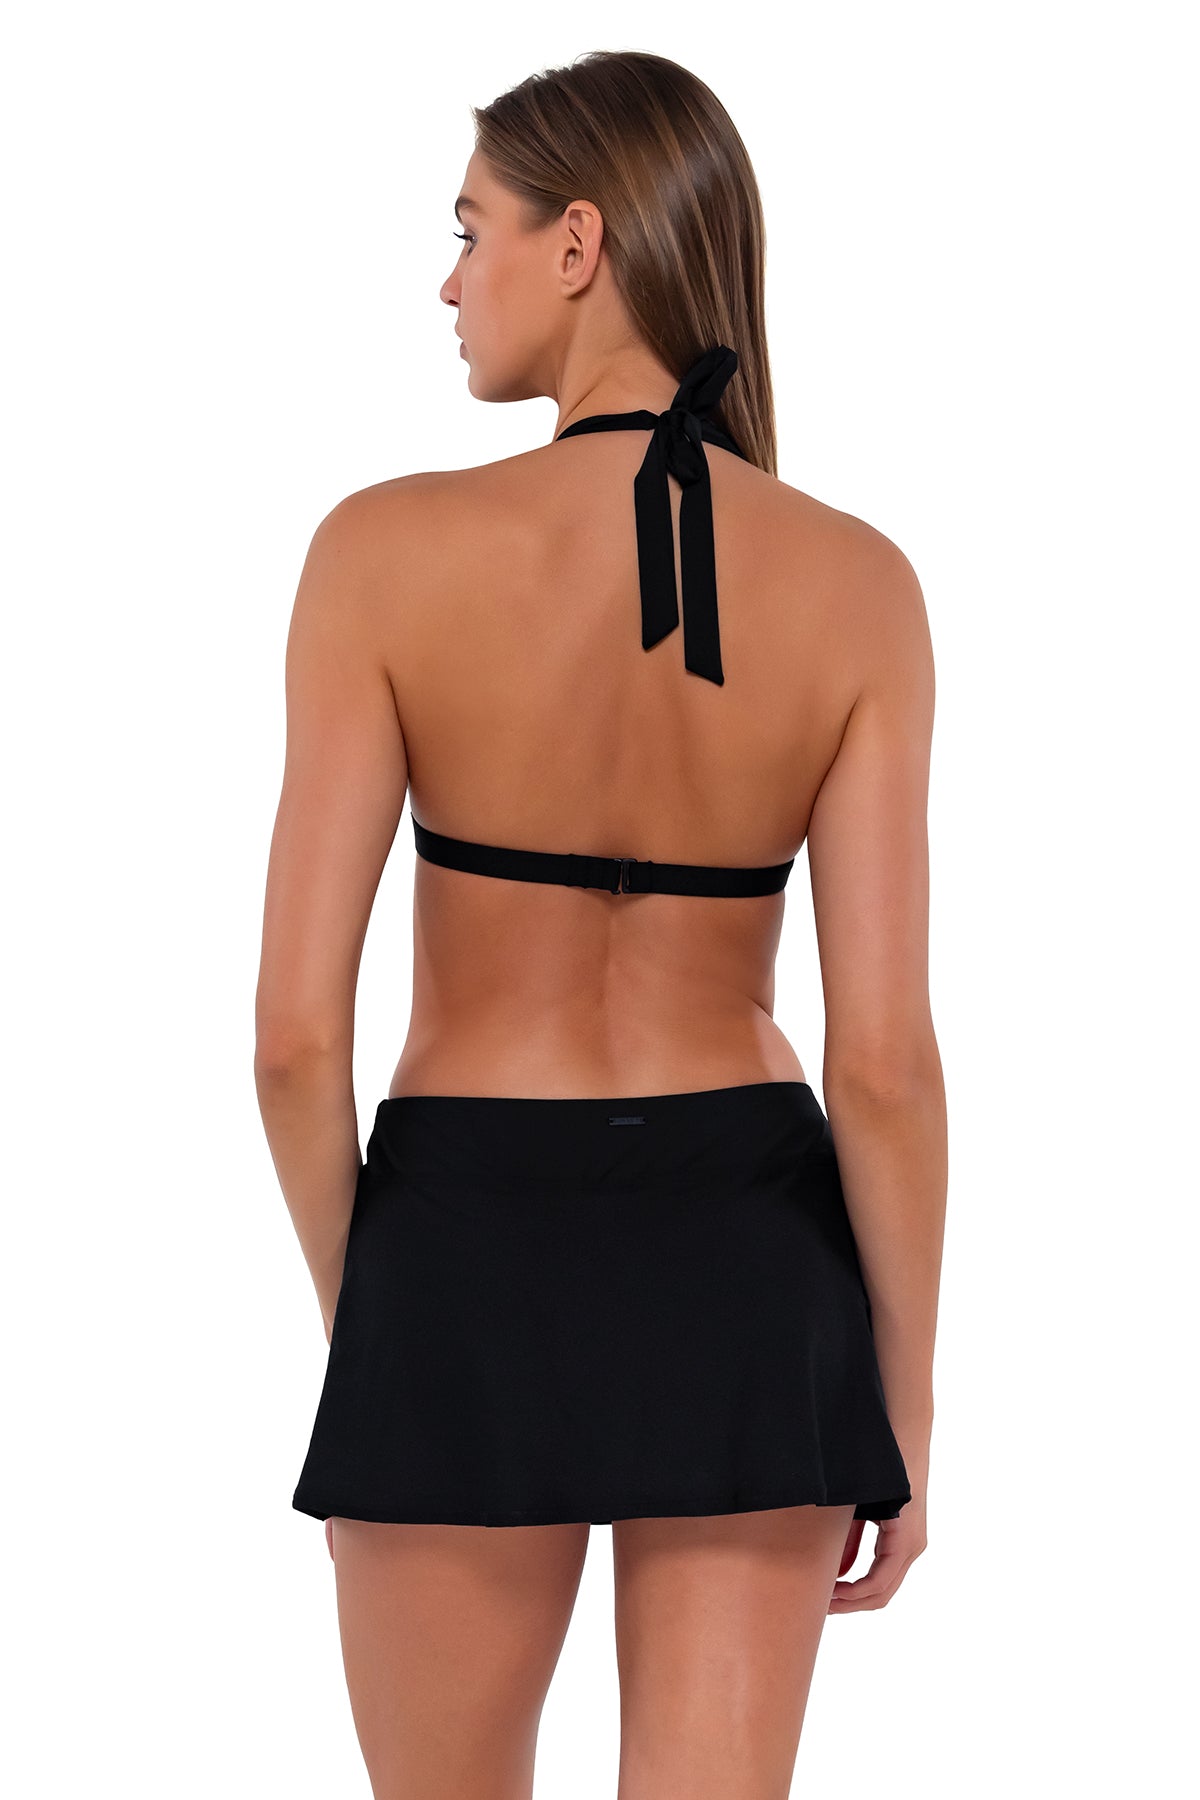 Victoria Black & Black Lace Triangle Bikini Top & Bottom - PICH Boutique